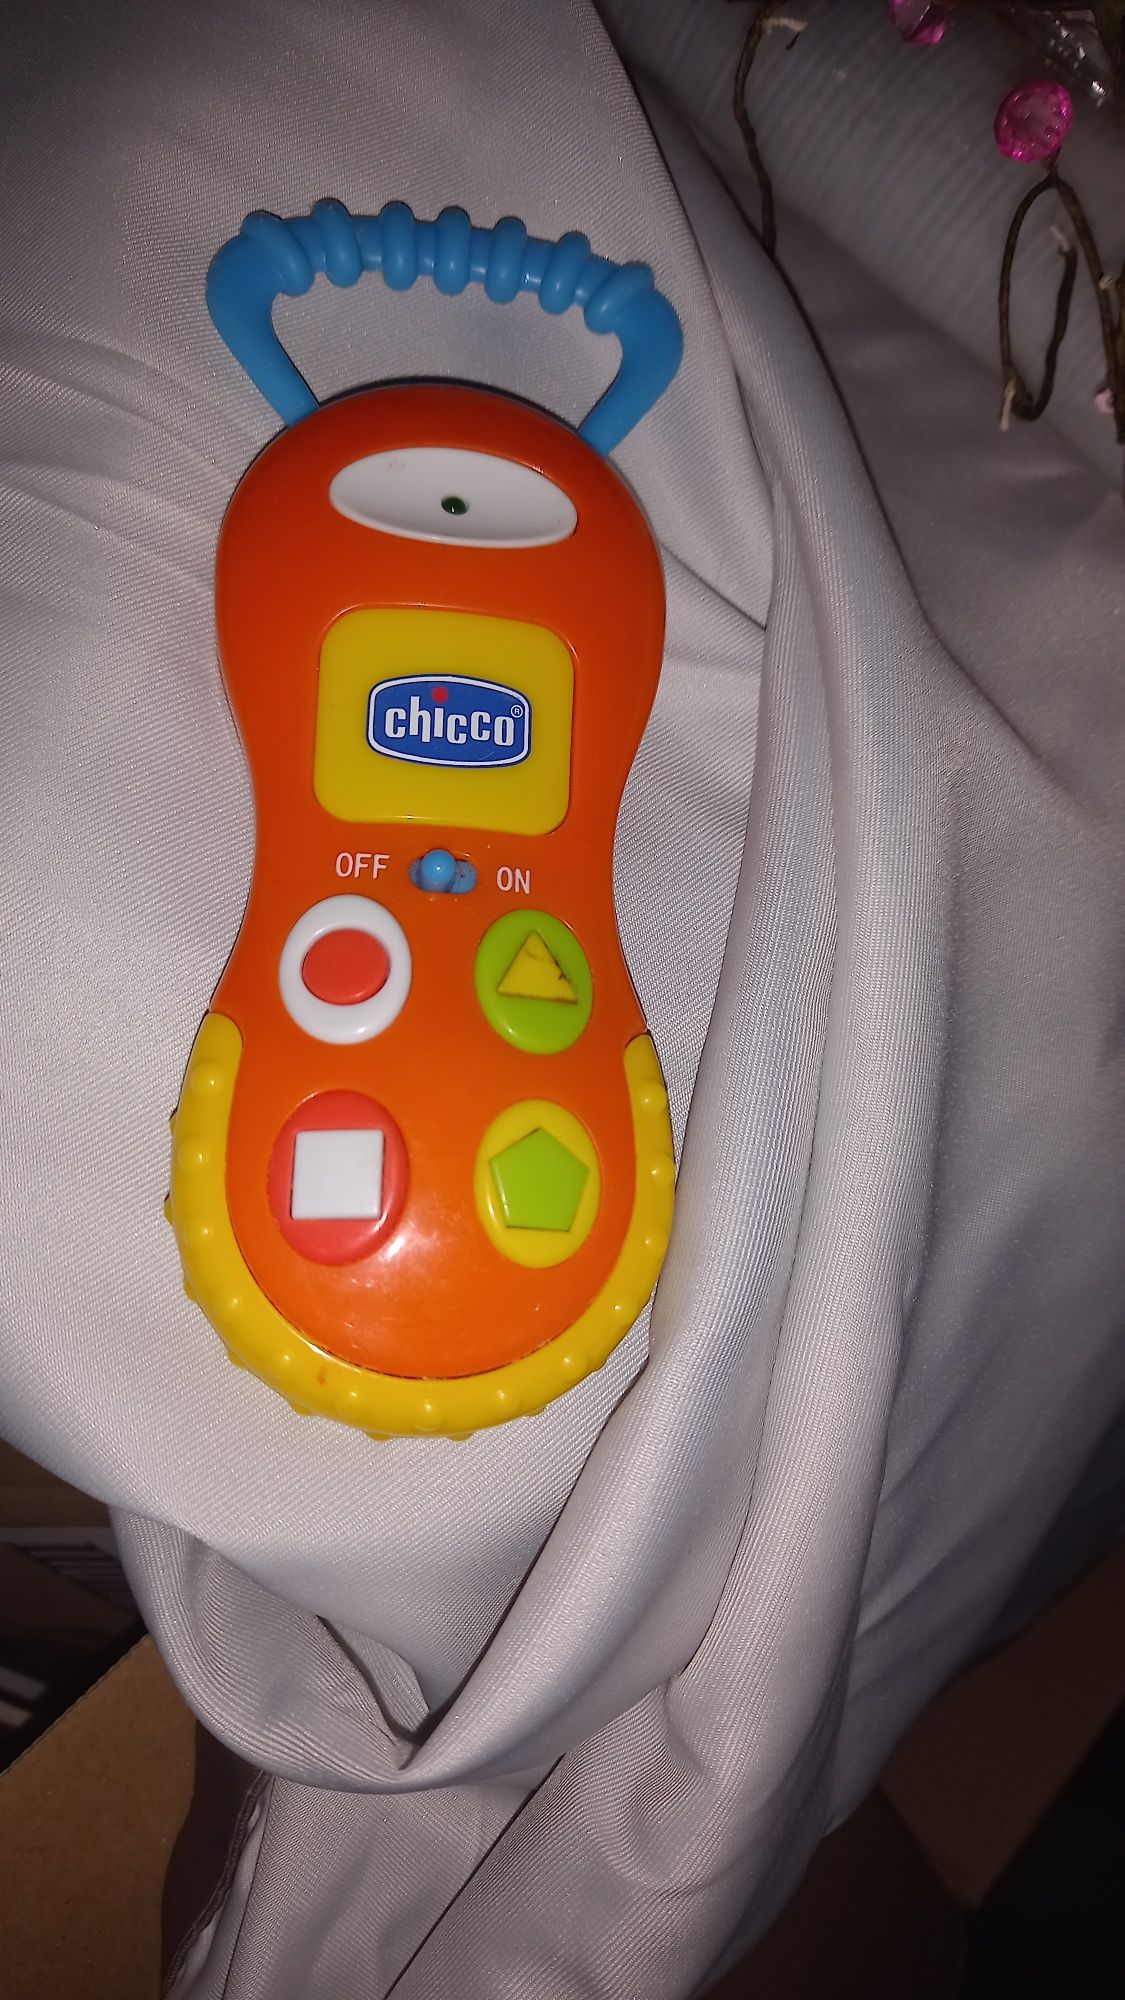 Telefon grajacy chicco zabawka dla niemowlaków